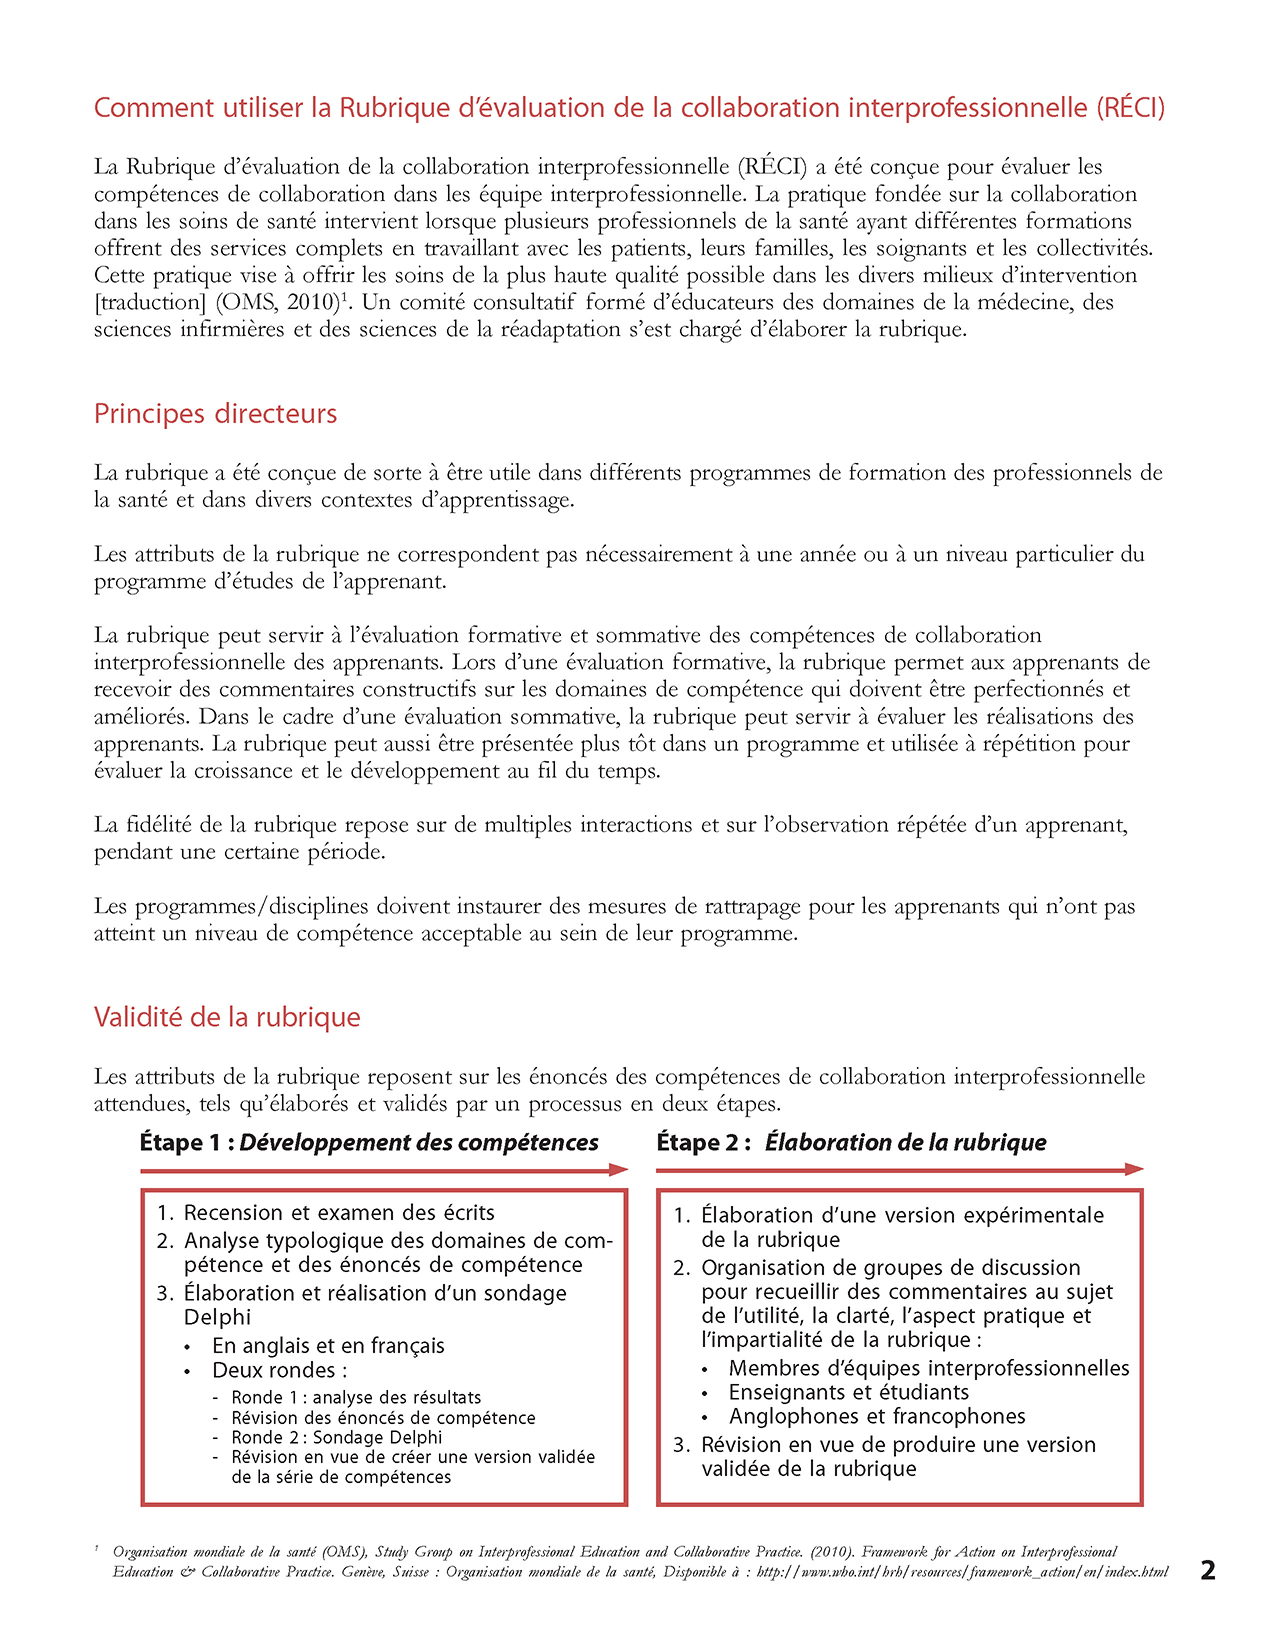 RÉCI – Rubrique d'évaluation de la collaboration interprofessionnelleOutils